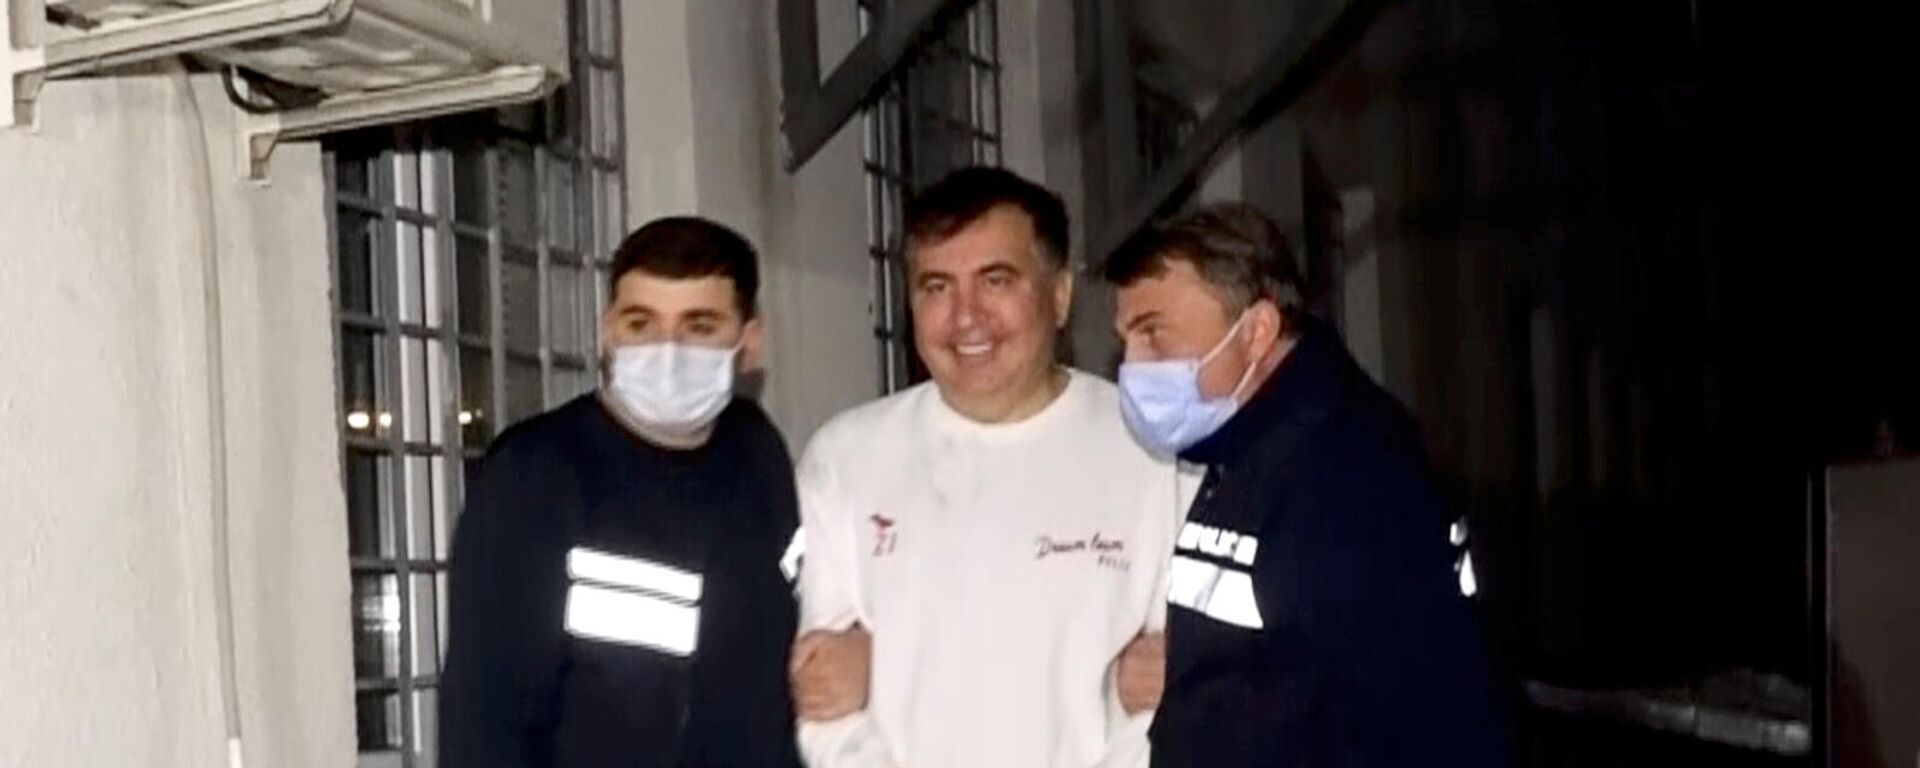 Сотрудники полиции сопровождают бывшего президента Грузии Михаила Саакашвили, который был задержан после возвращения в Грузию (1 октября 2021). Рустави - Sputnik Армения, 1920, 21.10.2021